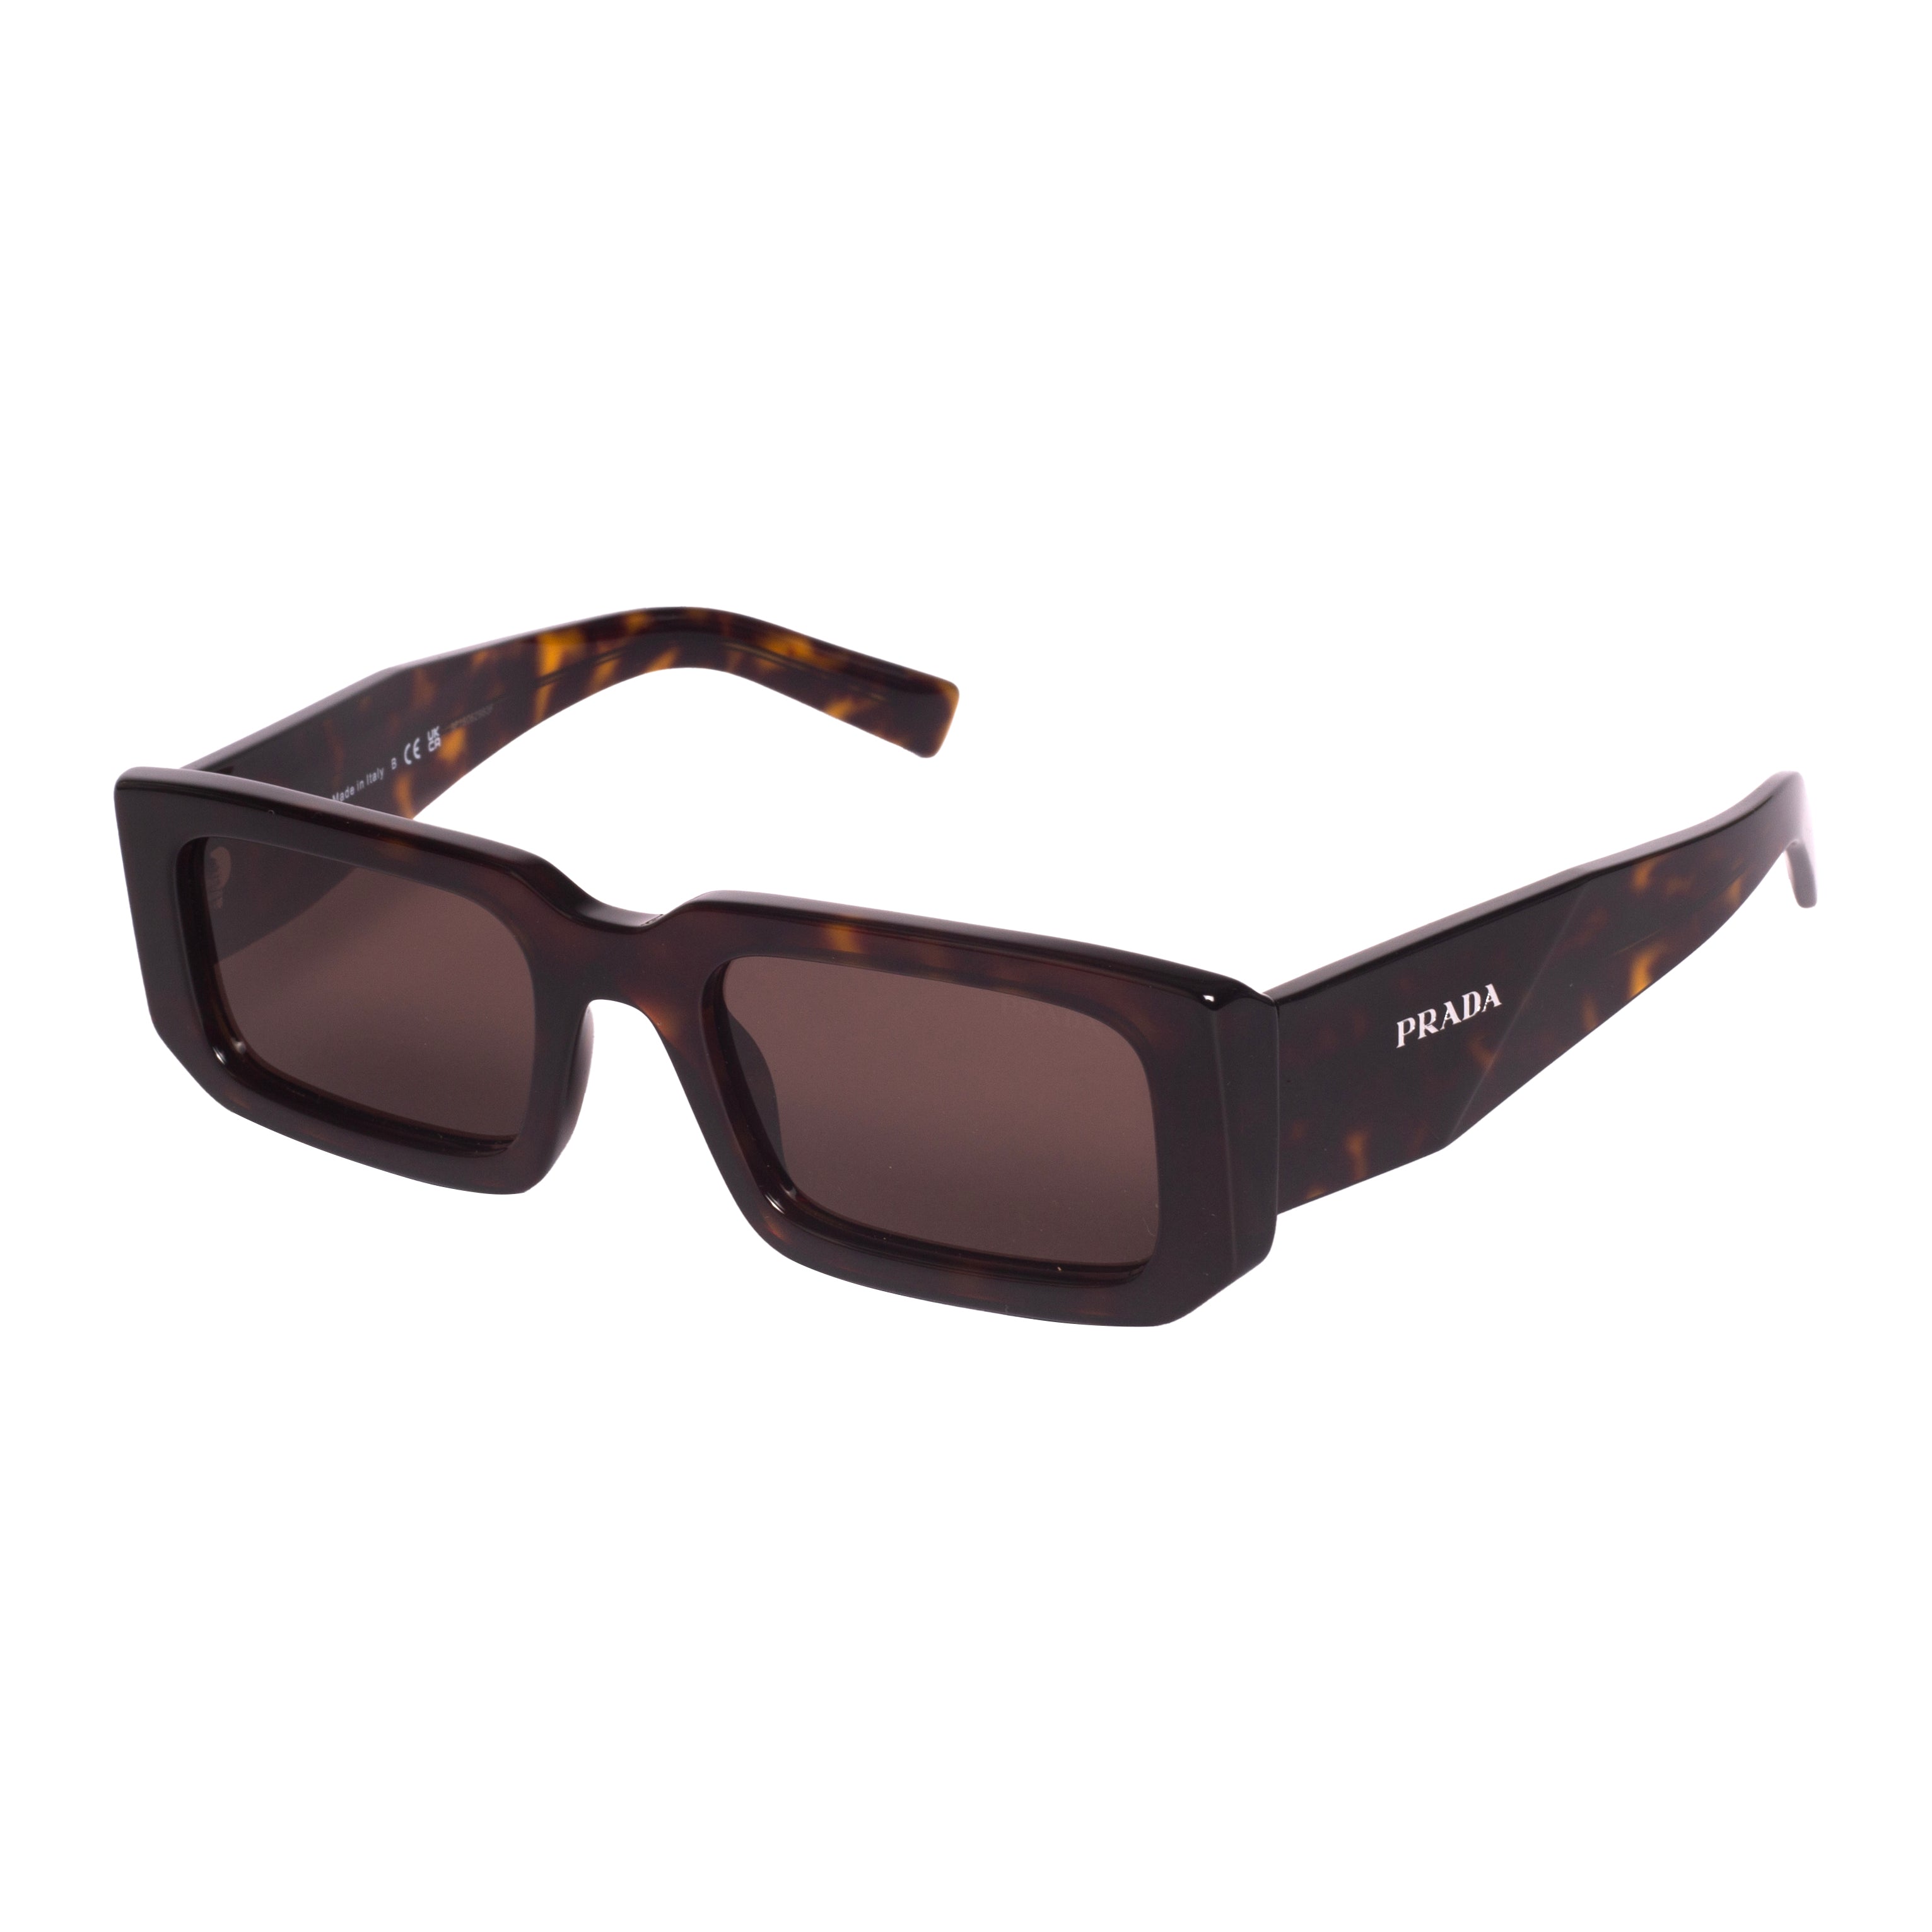 Prada-PR06YS-53-2AU8C1 Sunglasses - Premium Sunglasses from Prada - Just Rs. 36290! Shop now at Laxmi Opticians